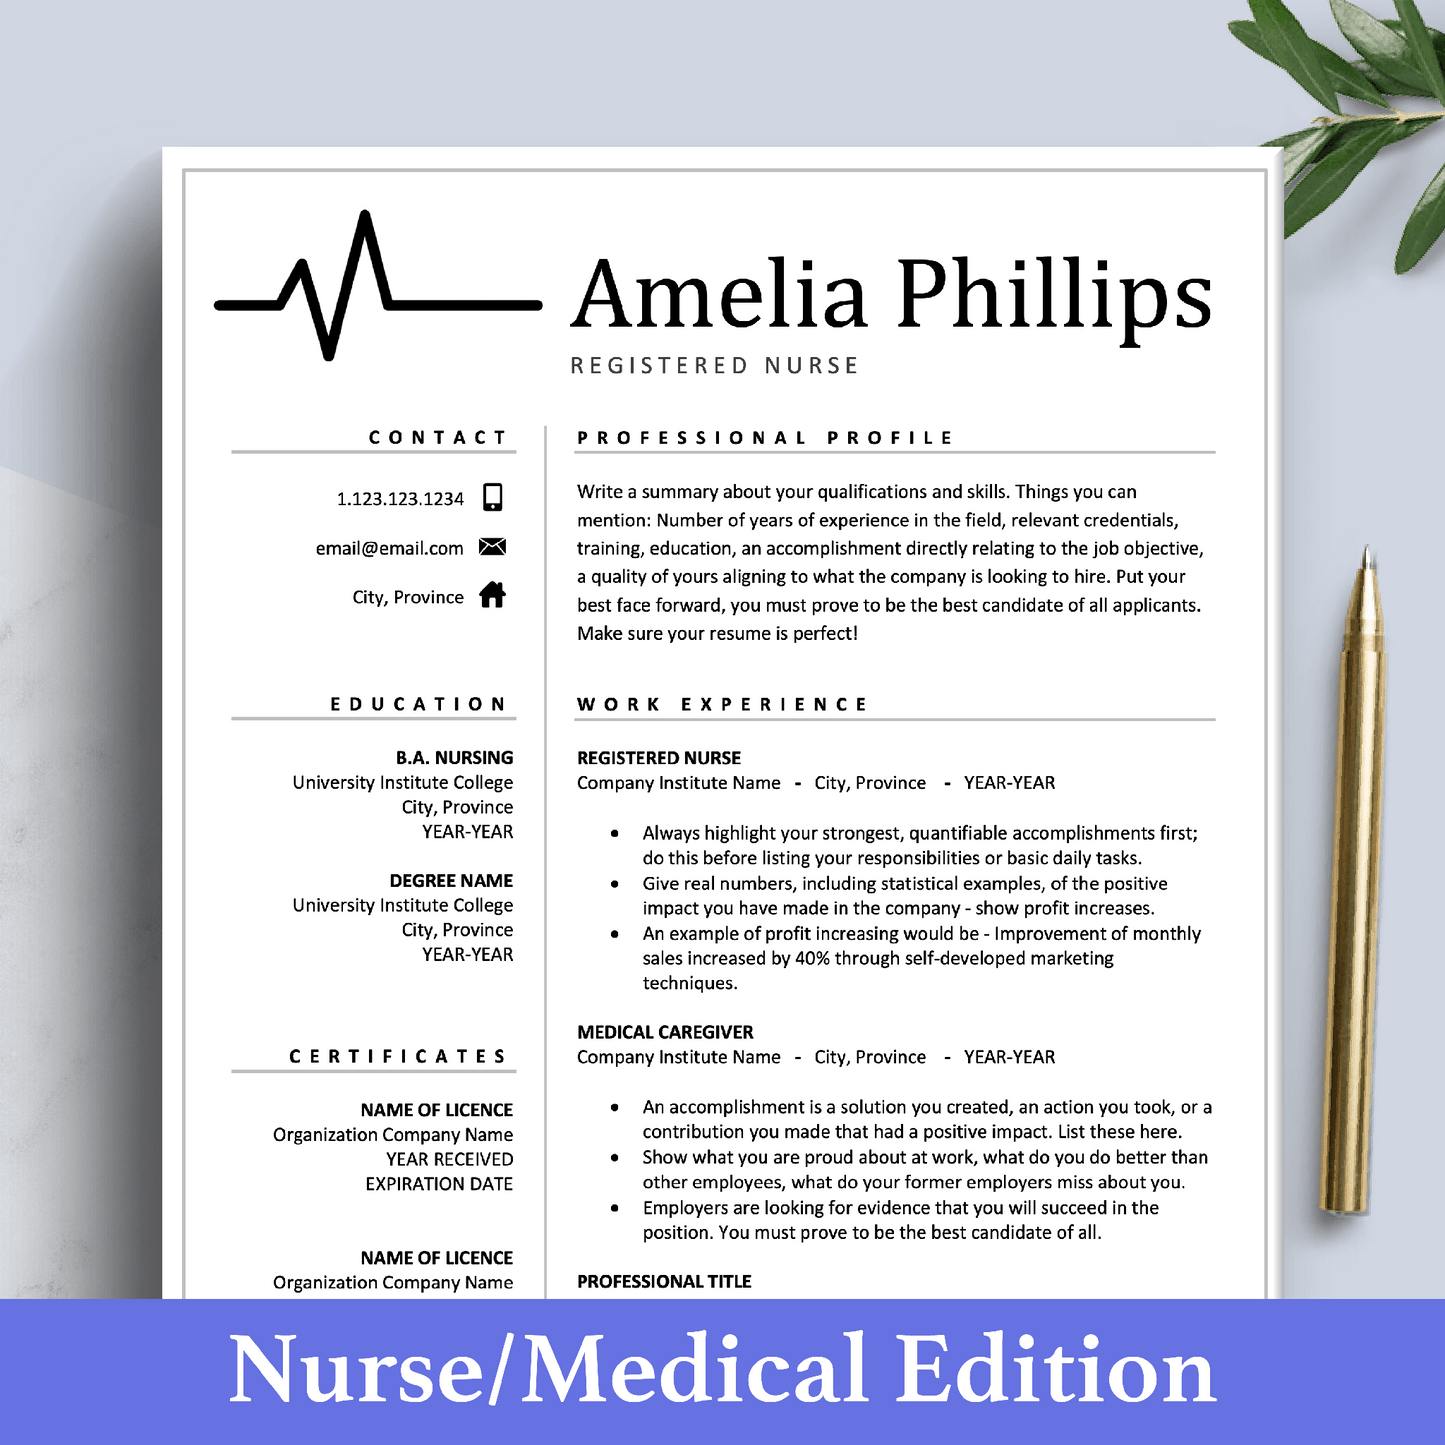 Plantilla de currículum médico | Curriculum Vitae para enfermera, médico y enfermero registrado